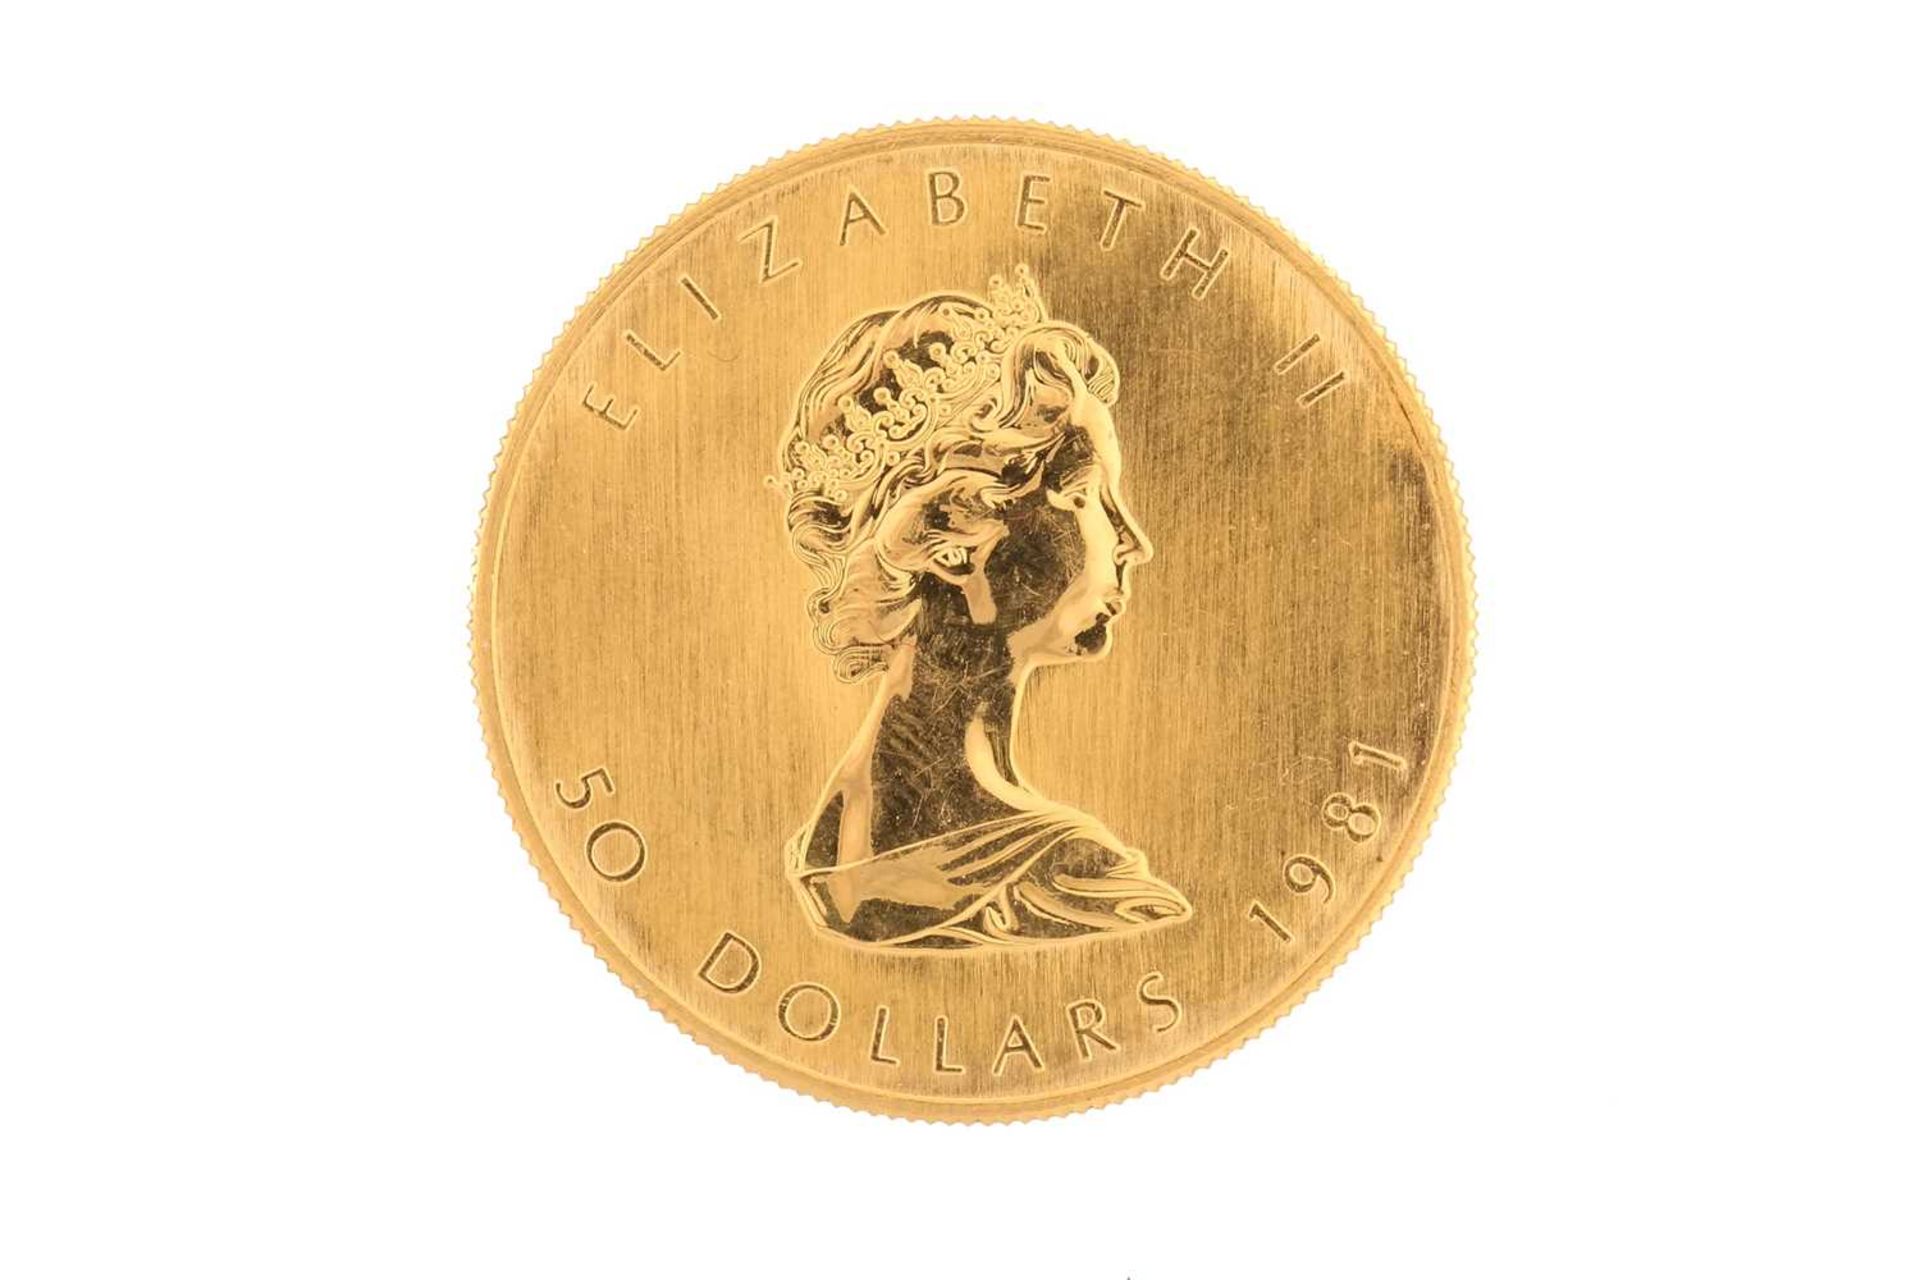 Canada - Elizabeth II, gold Maple leaf 50 dollars, 1981, 1oz fine gold